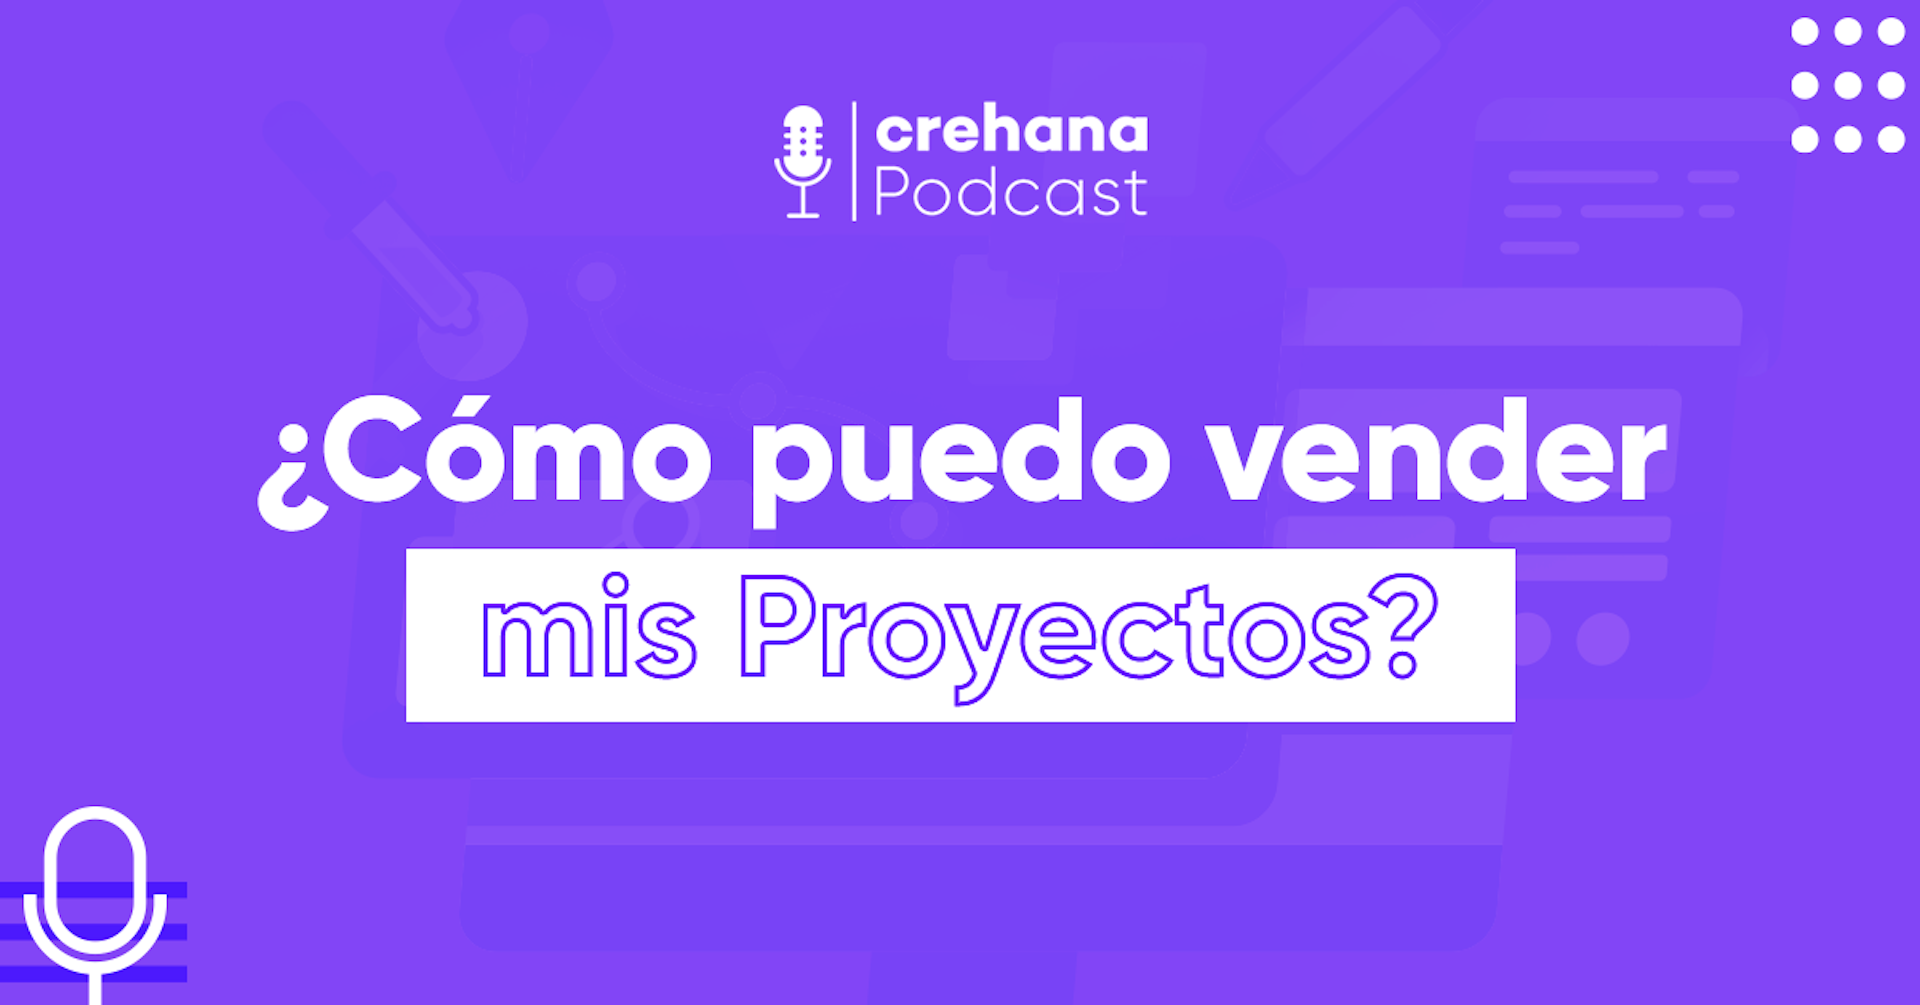 Crehana Podcast: ¿Cómo puedo vender mis proyectos?